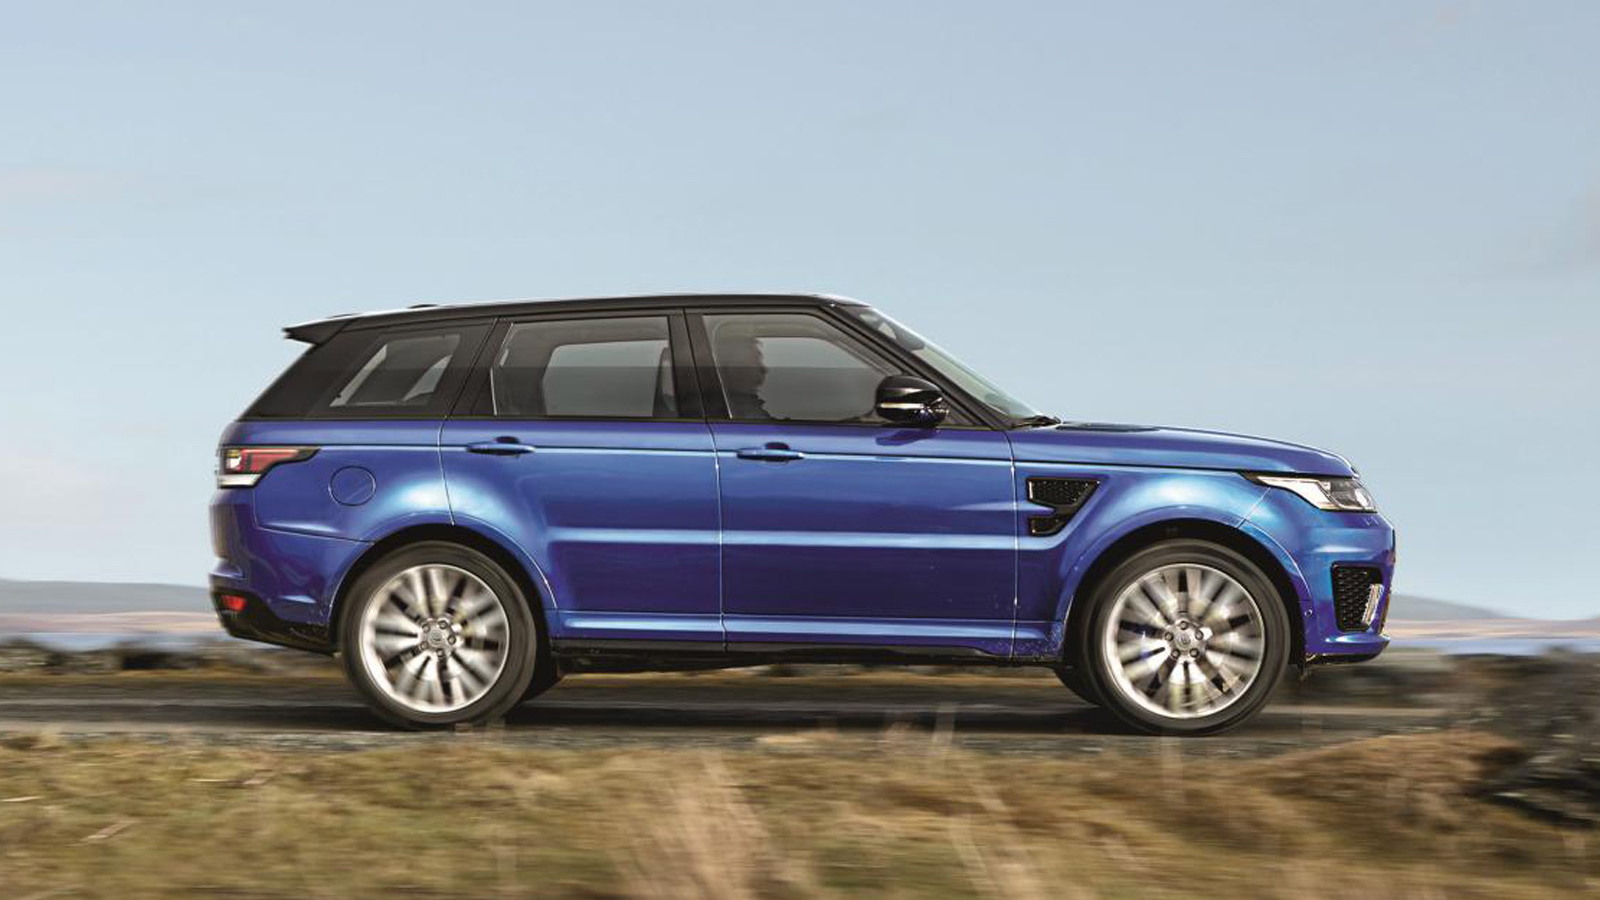 2015 Land Rover Range Rover Sport SVR Revealed: Video